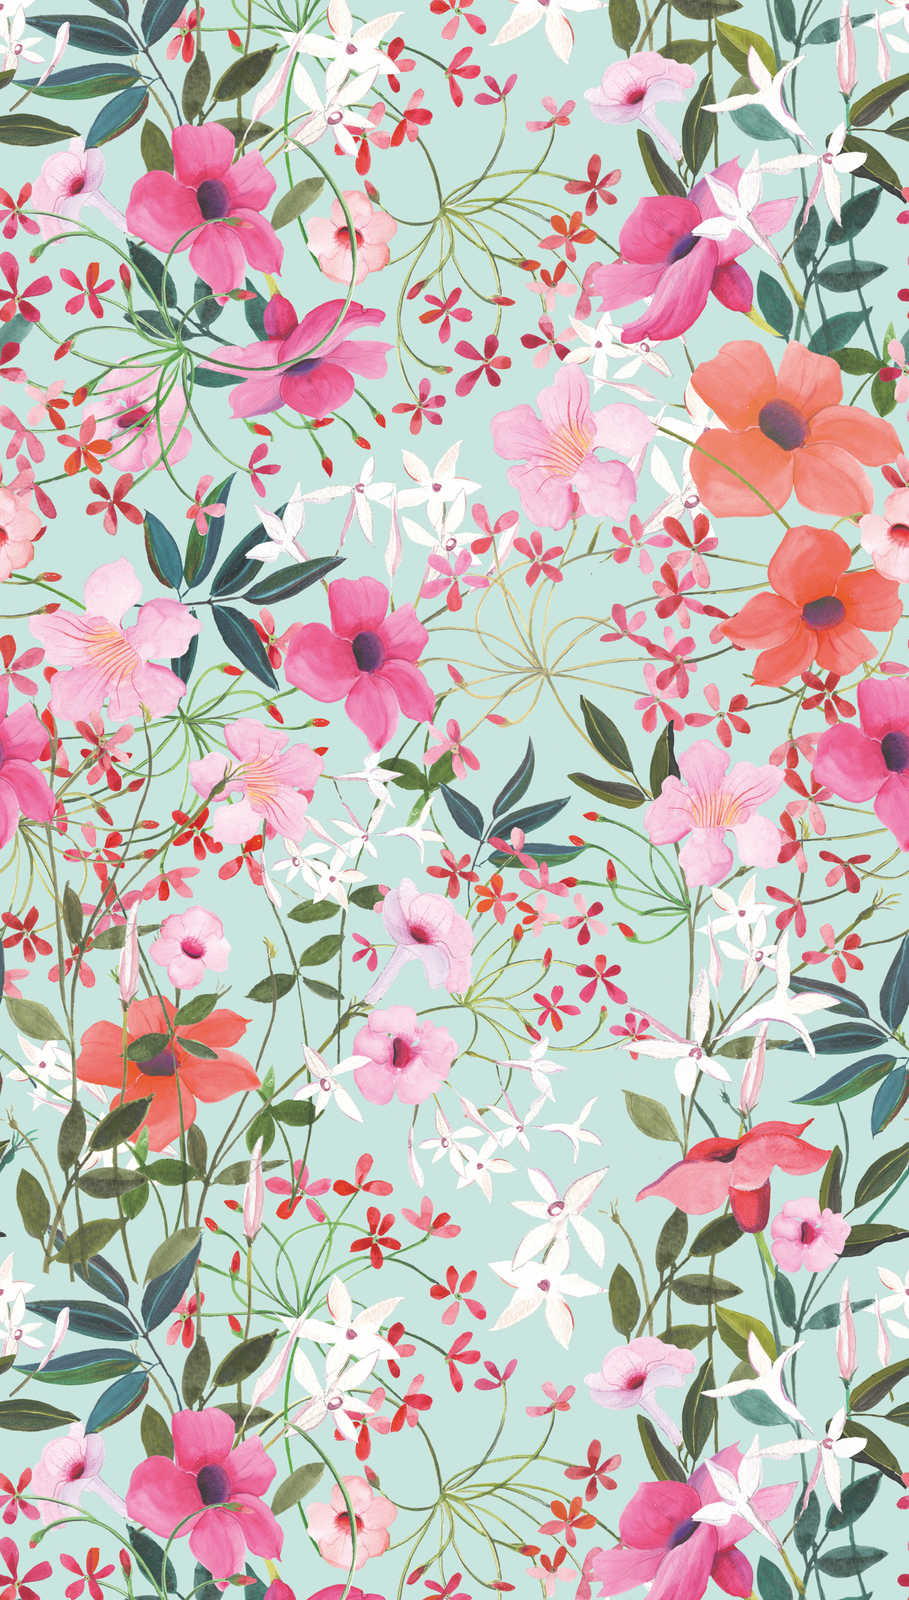             Papier peint intissé avec motif à fleurs et feuilles - multicolore, turquoise, vert
        